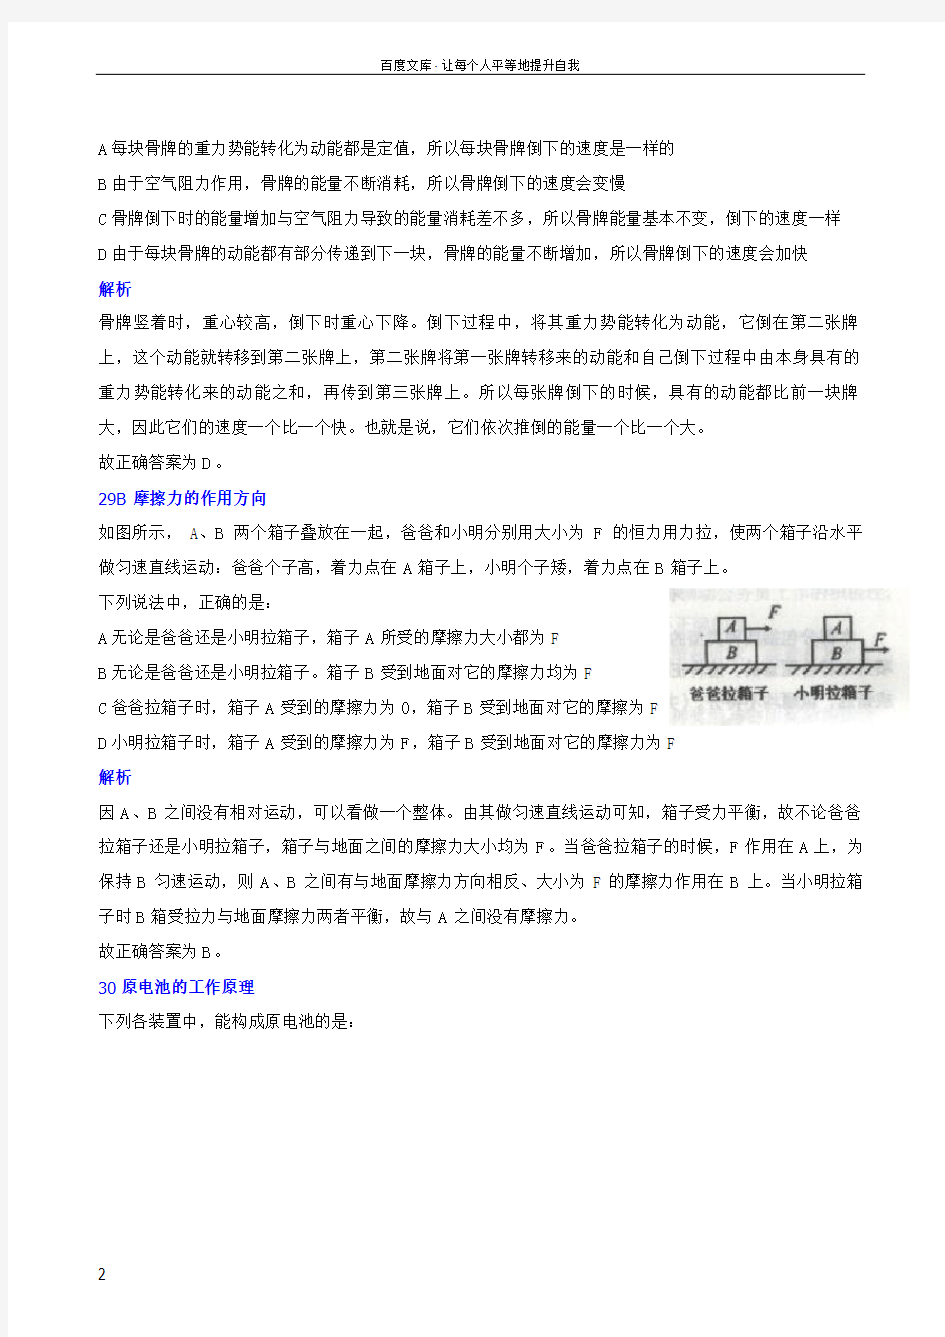 广东省公务员科学推理备考上海市科学推理真题(0714年)